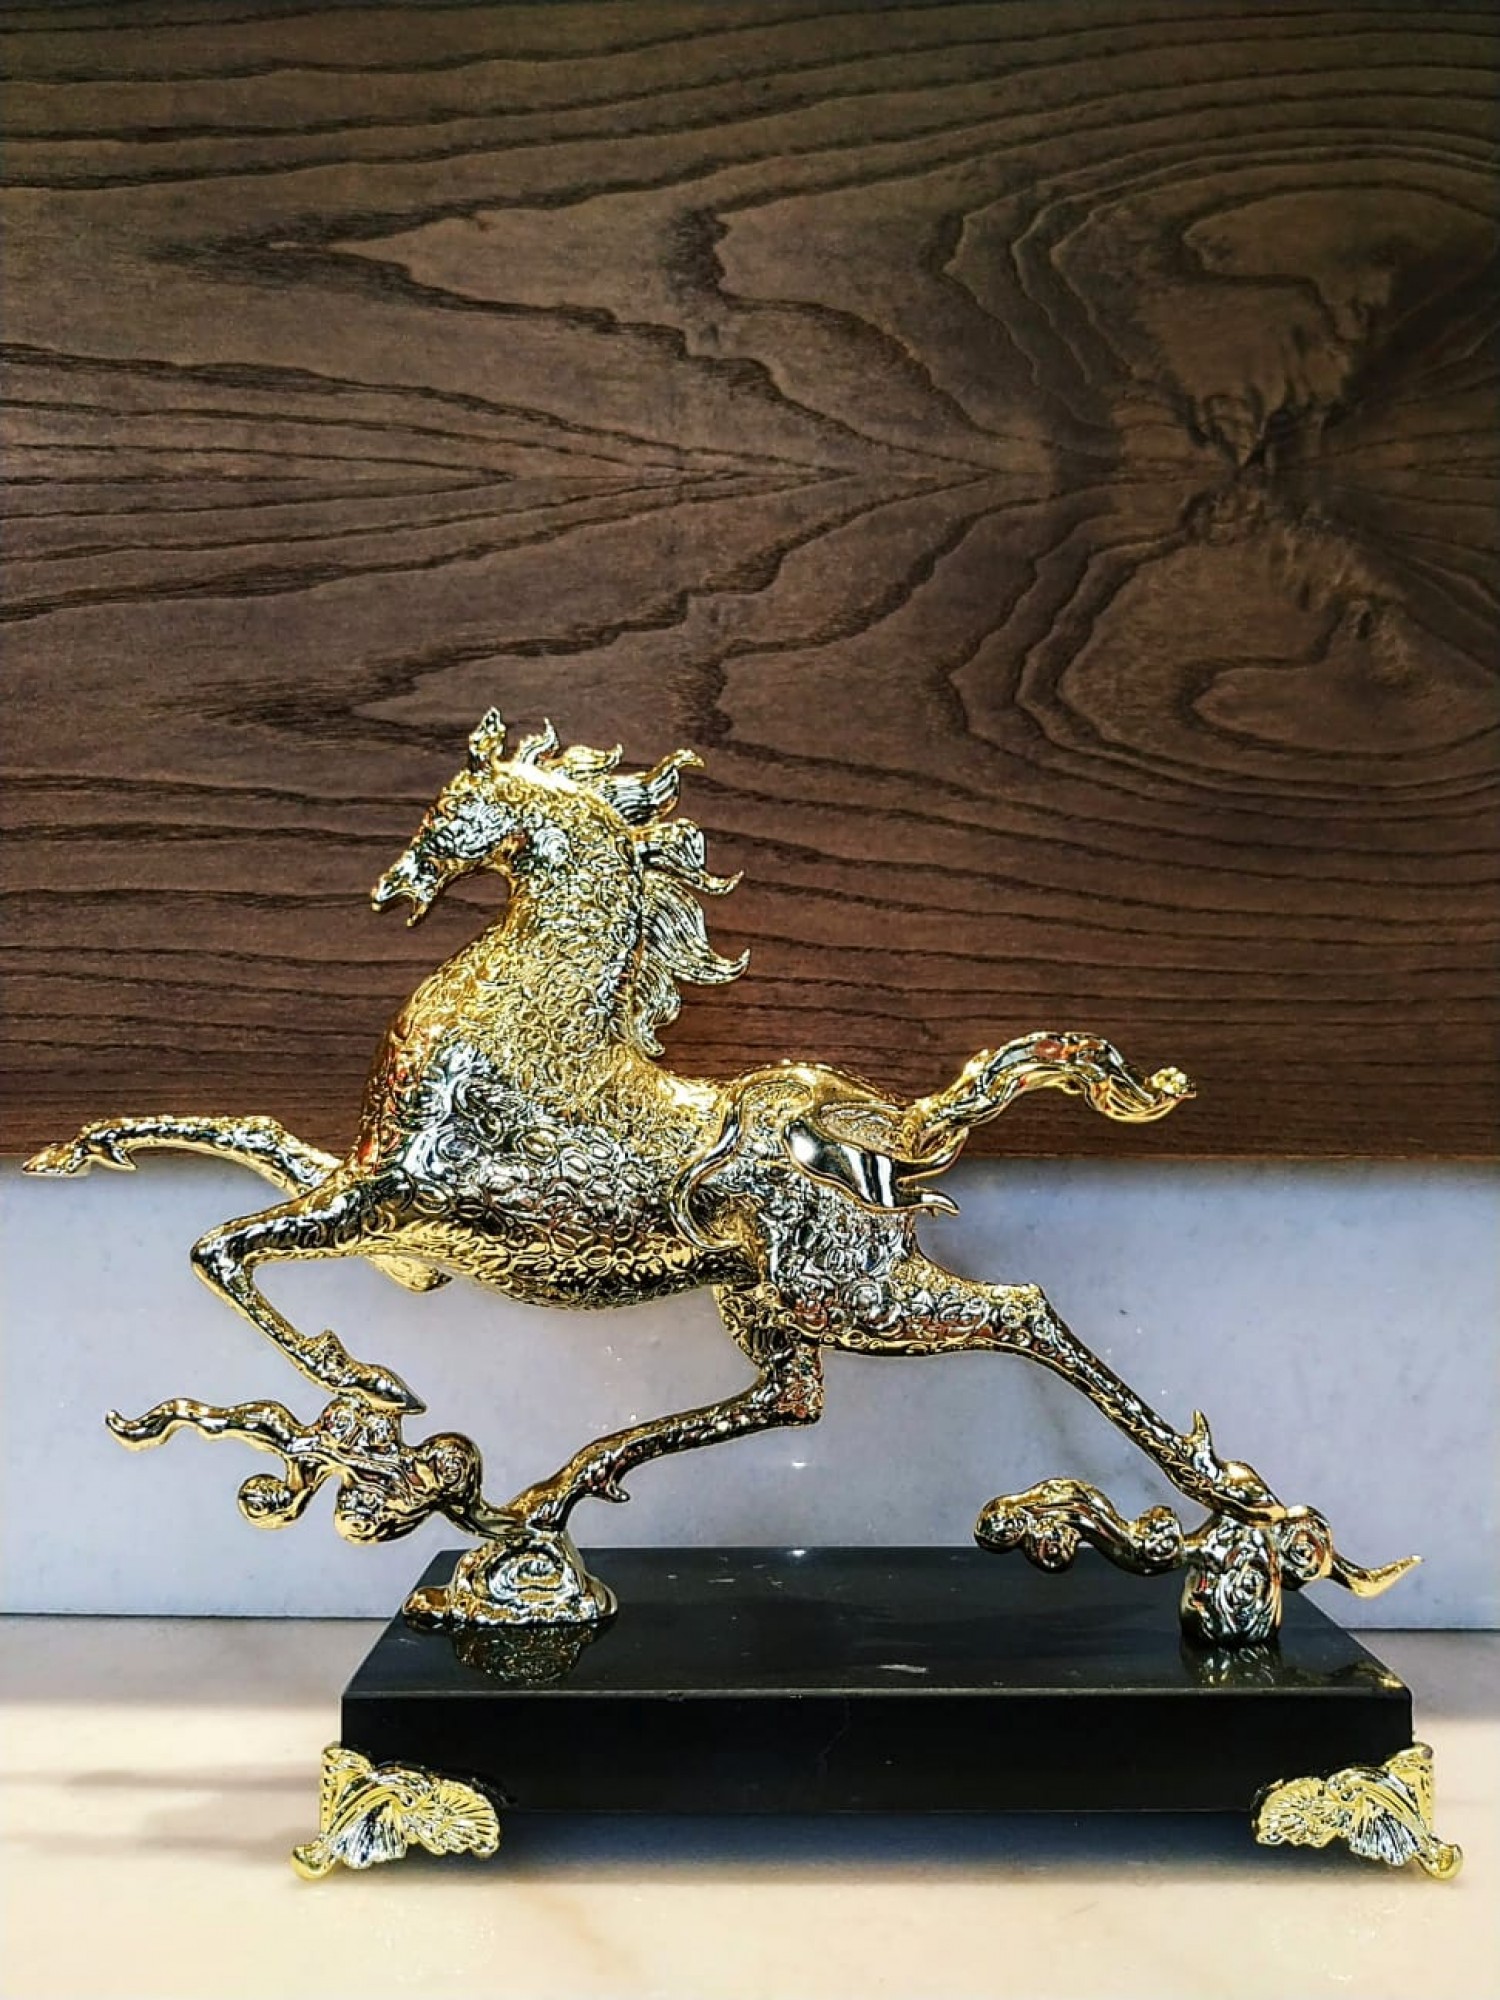 Статуэтка конь бегущий золотой - сила, упорство и Победа!